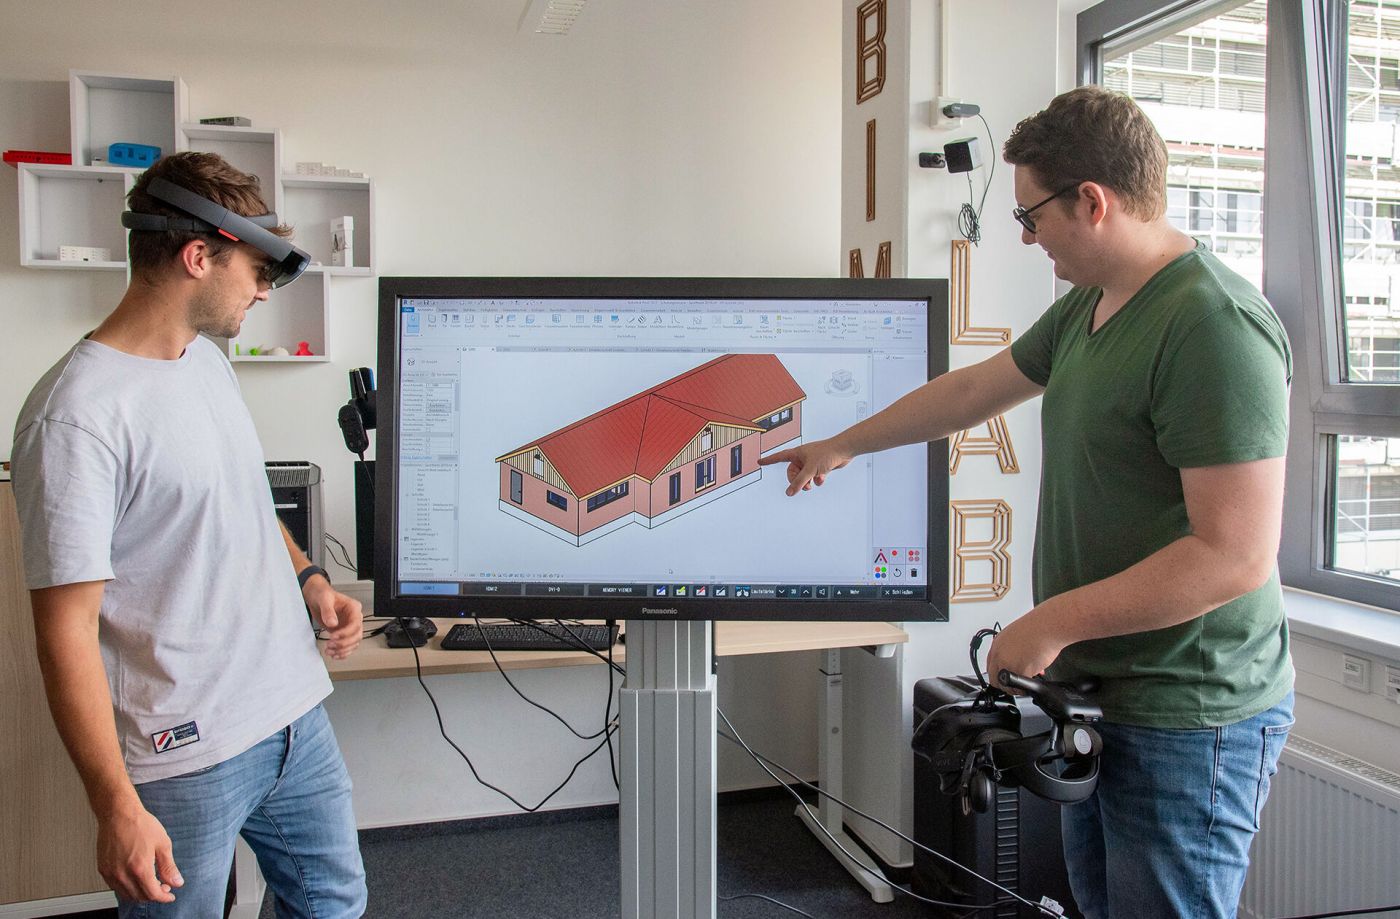 Zwei Männer halten Virtual-Reality-Brillen und stehen vor einem Bildschirm, das ein digitales gebäudemodell zeigt. (Foto: FH Münster/Michelle Liedtke)